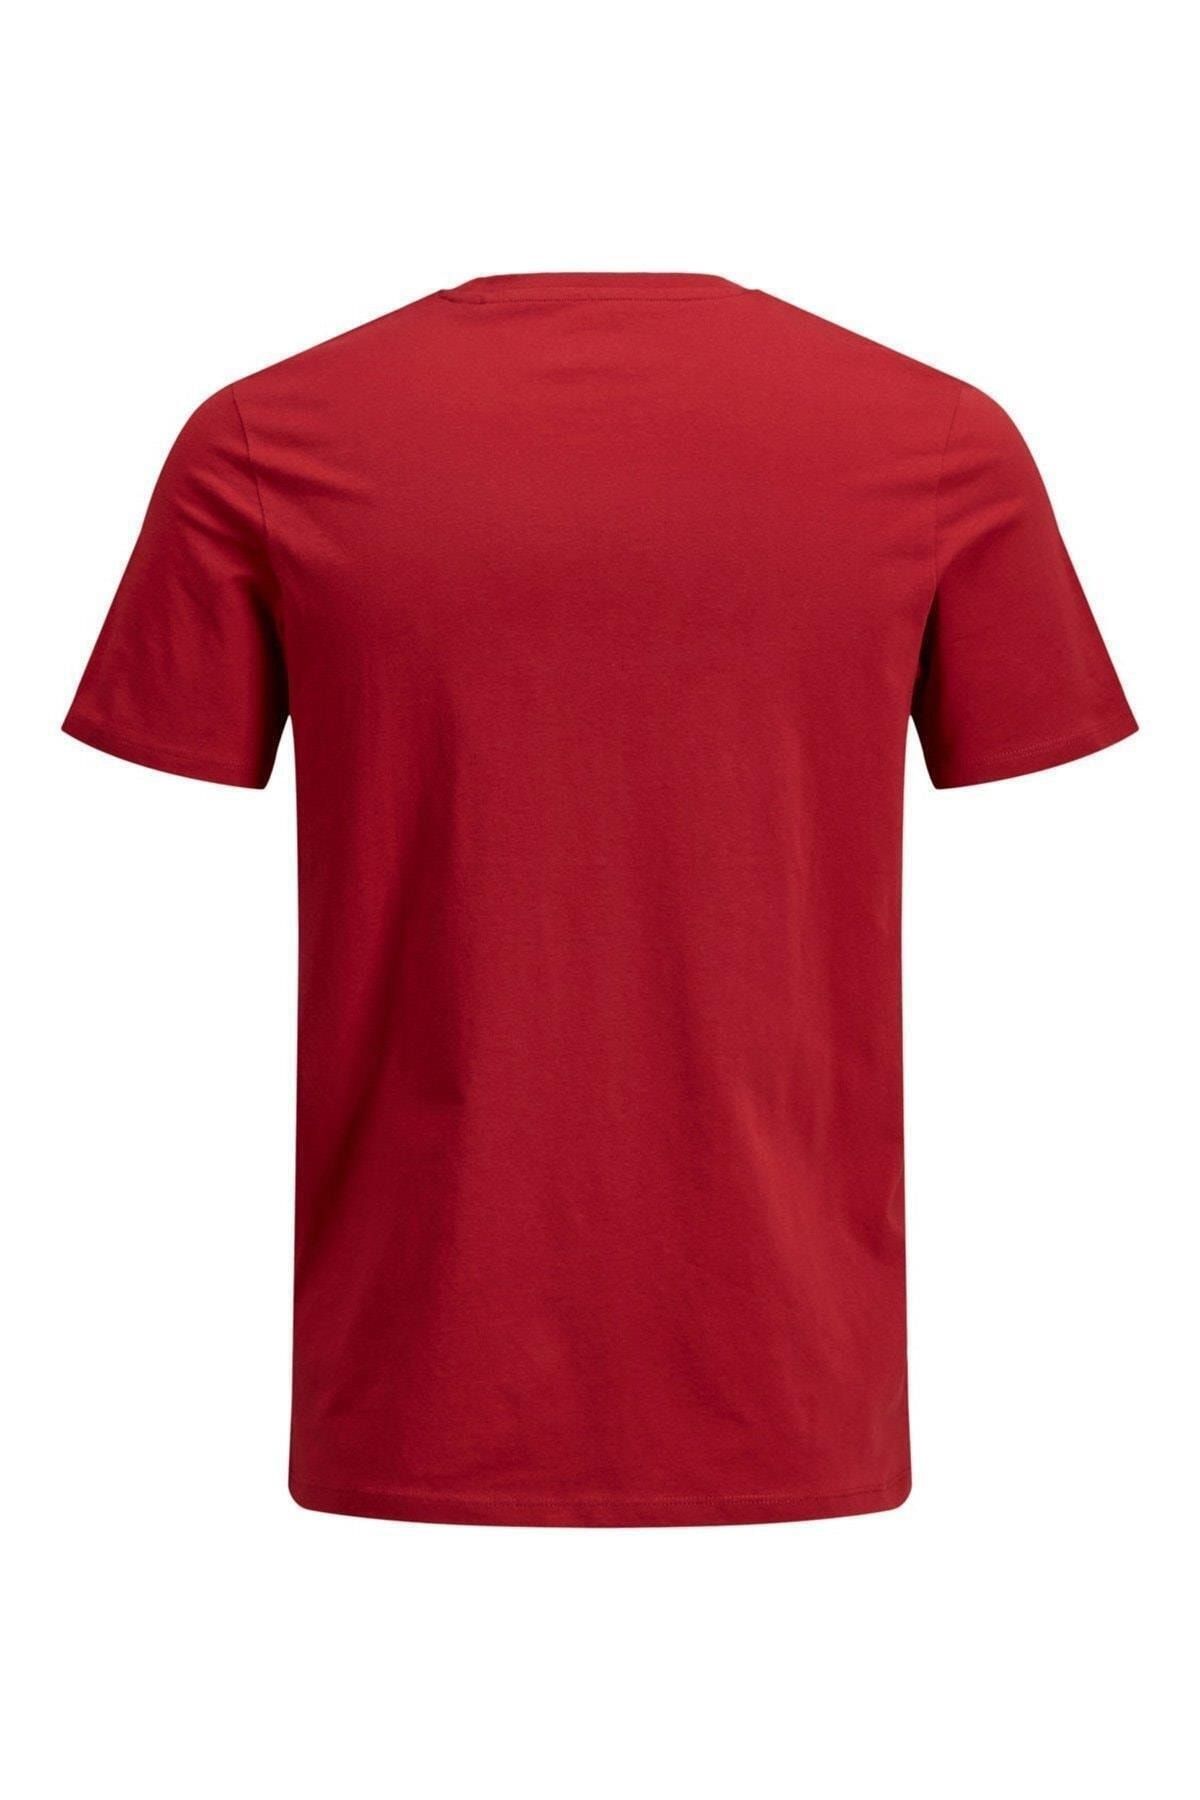 تی شرت مردانه قرمز جک اند جونز Jack & Jones (برند دانمارک)